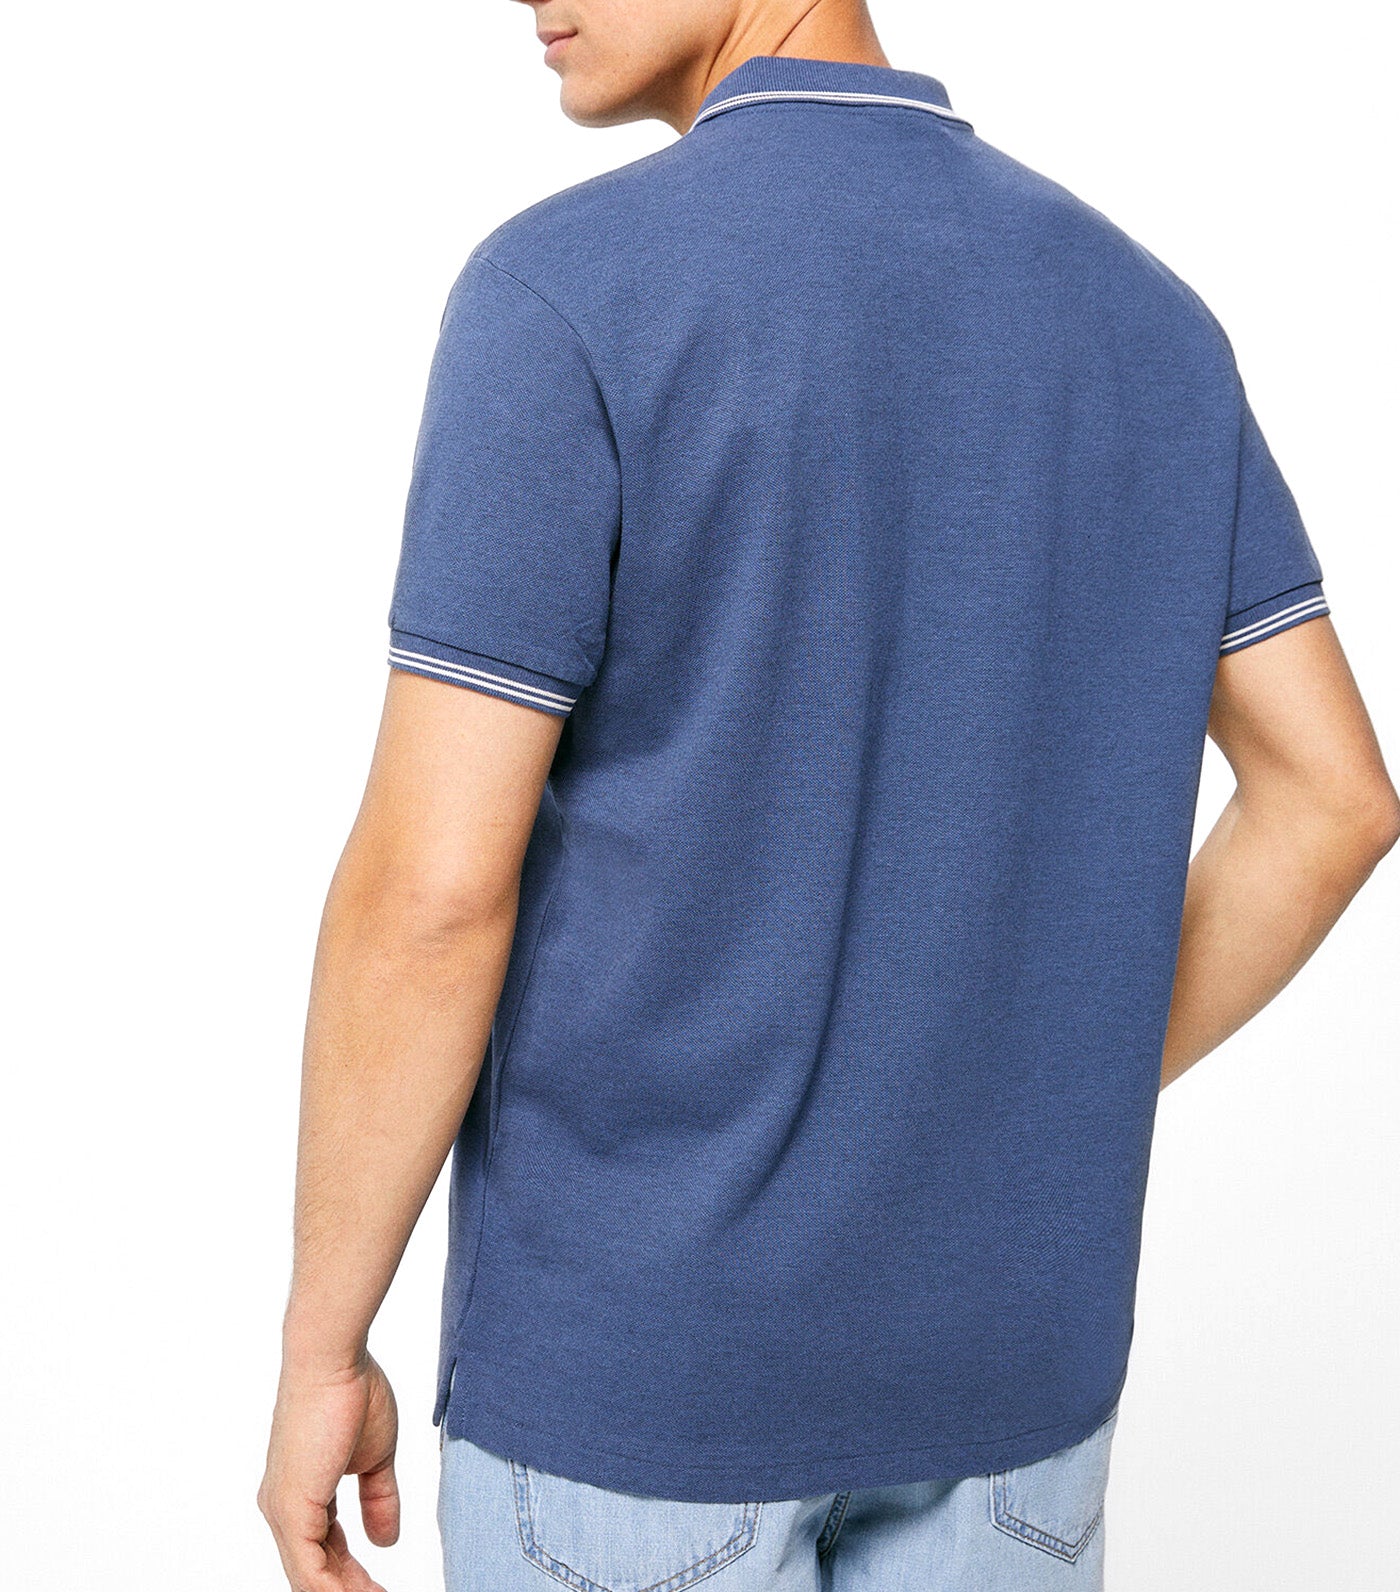 Contrast Pique Polo Shirt Blue